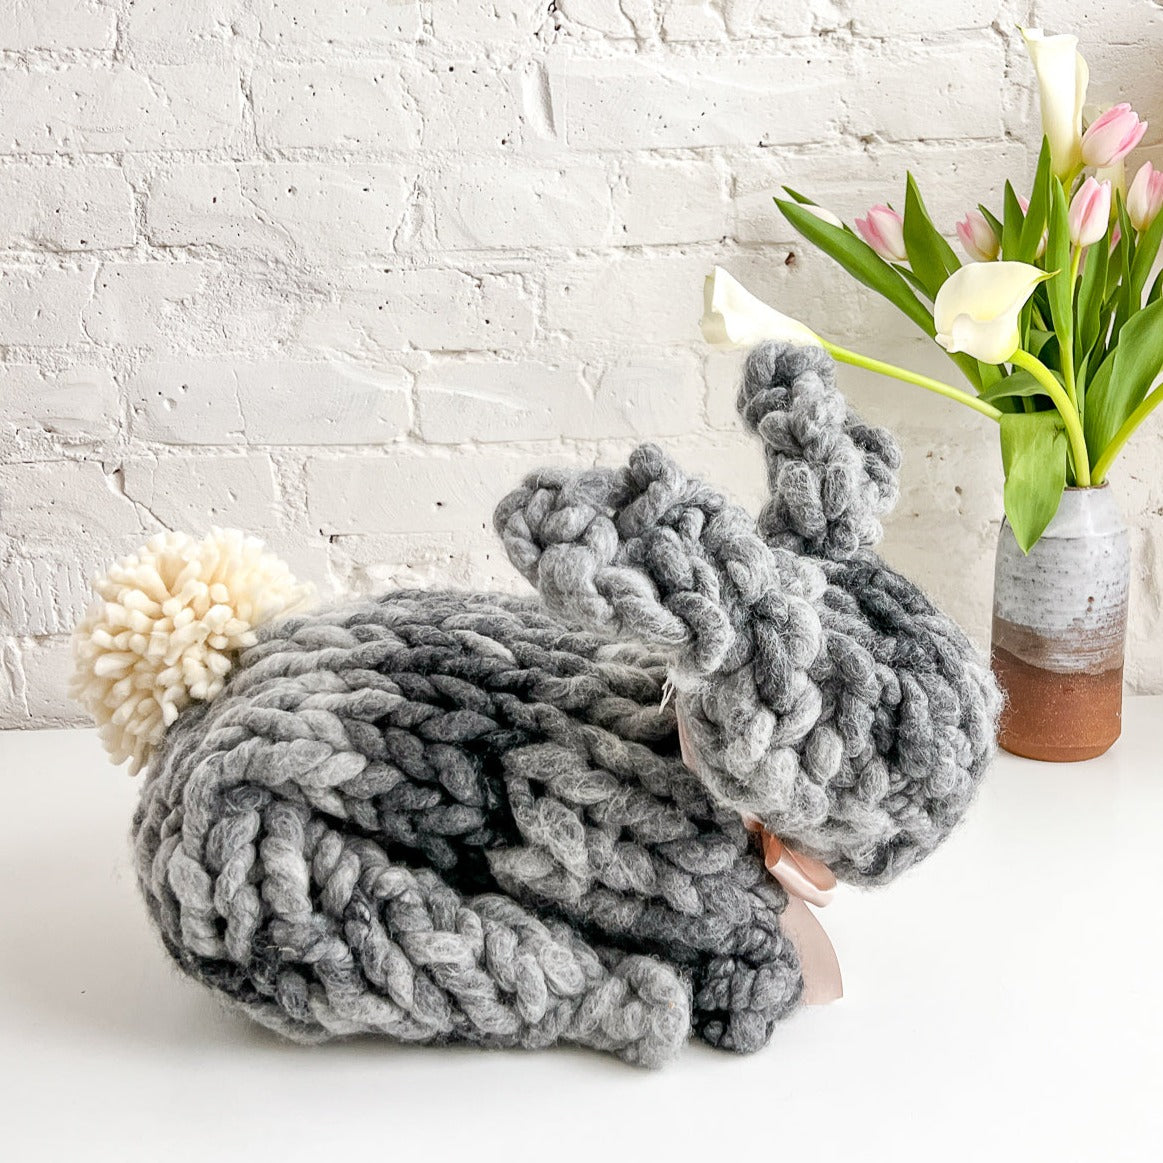 Chunky Wool Yarn Filling Arm Knit Yarn Bulky Giant Wool Yarn Weight Yarn for